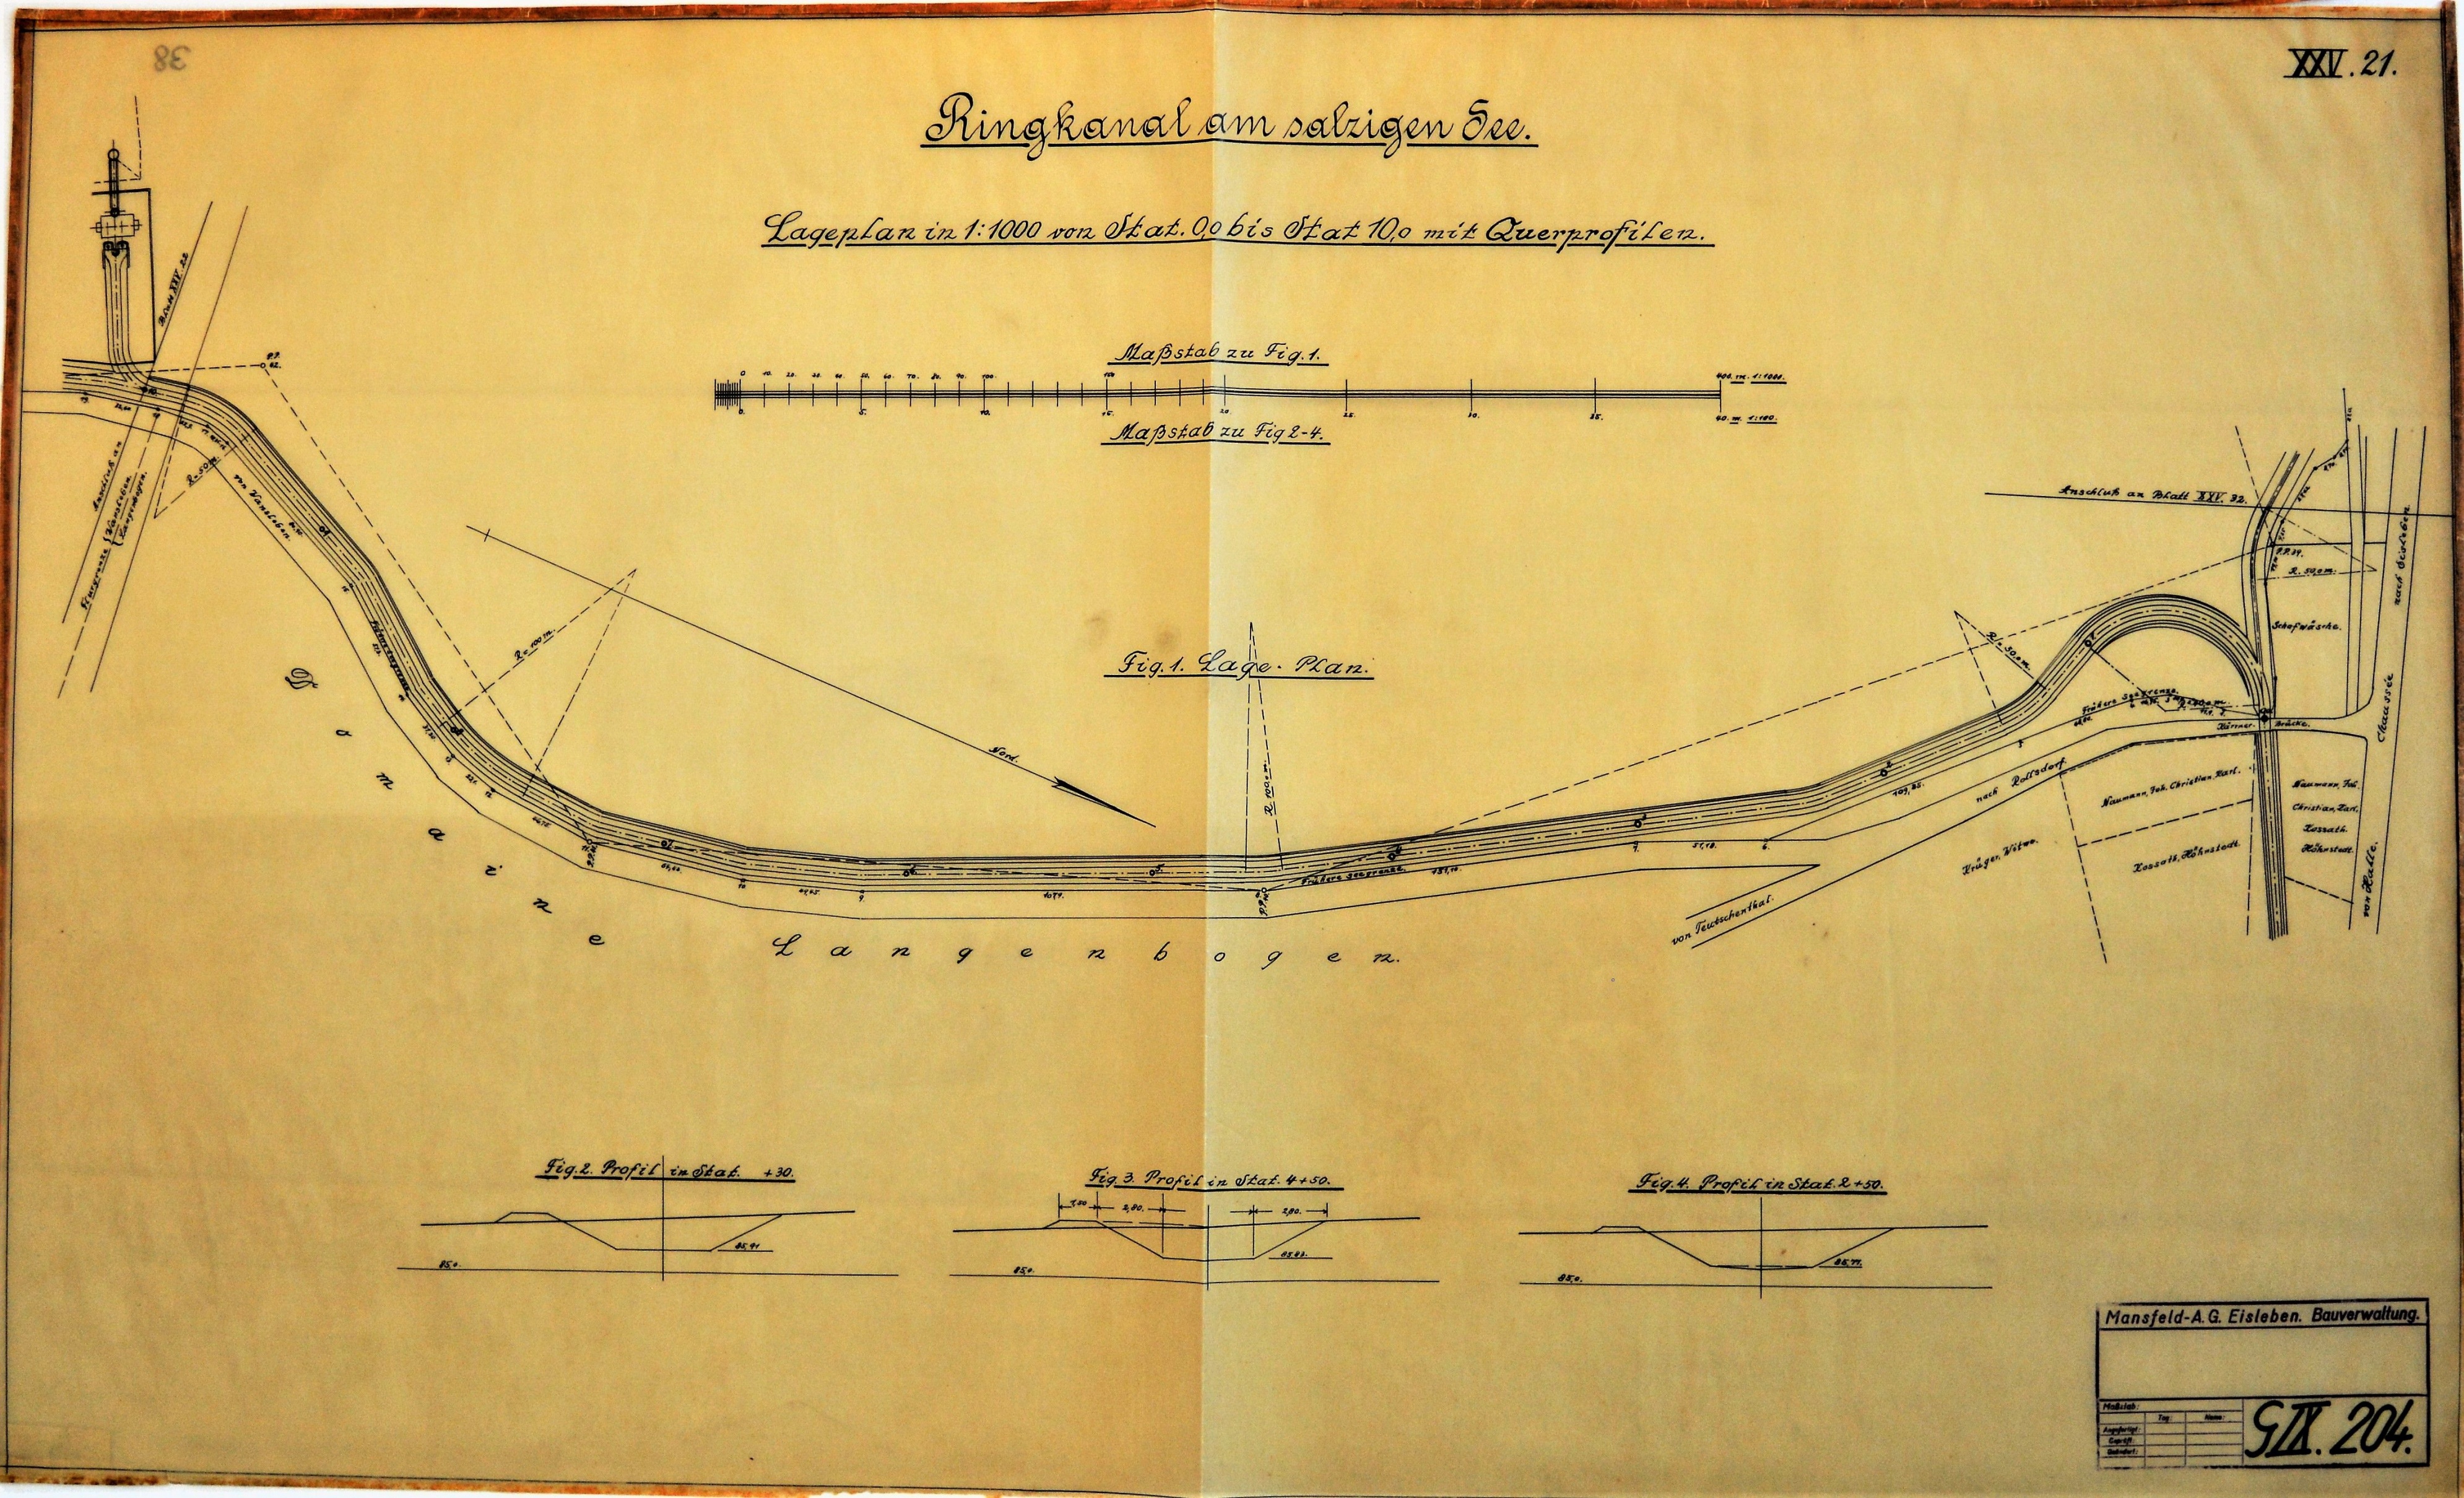 Ringcanal am salzigen See Lageplan in 1:1000 von Stat. 0,0 bis Stat. 10,0 mit Querprofilen. (Mansfeld-Museum im Humboldt-Schloss CC BY-NC-SA)